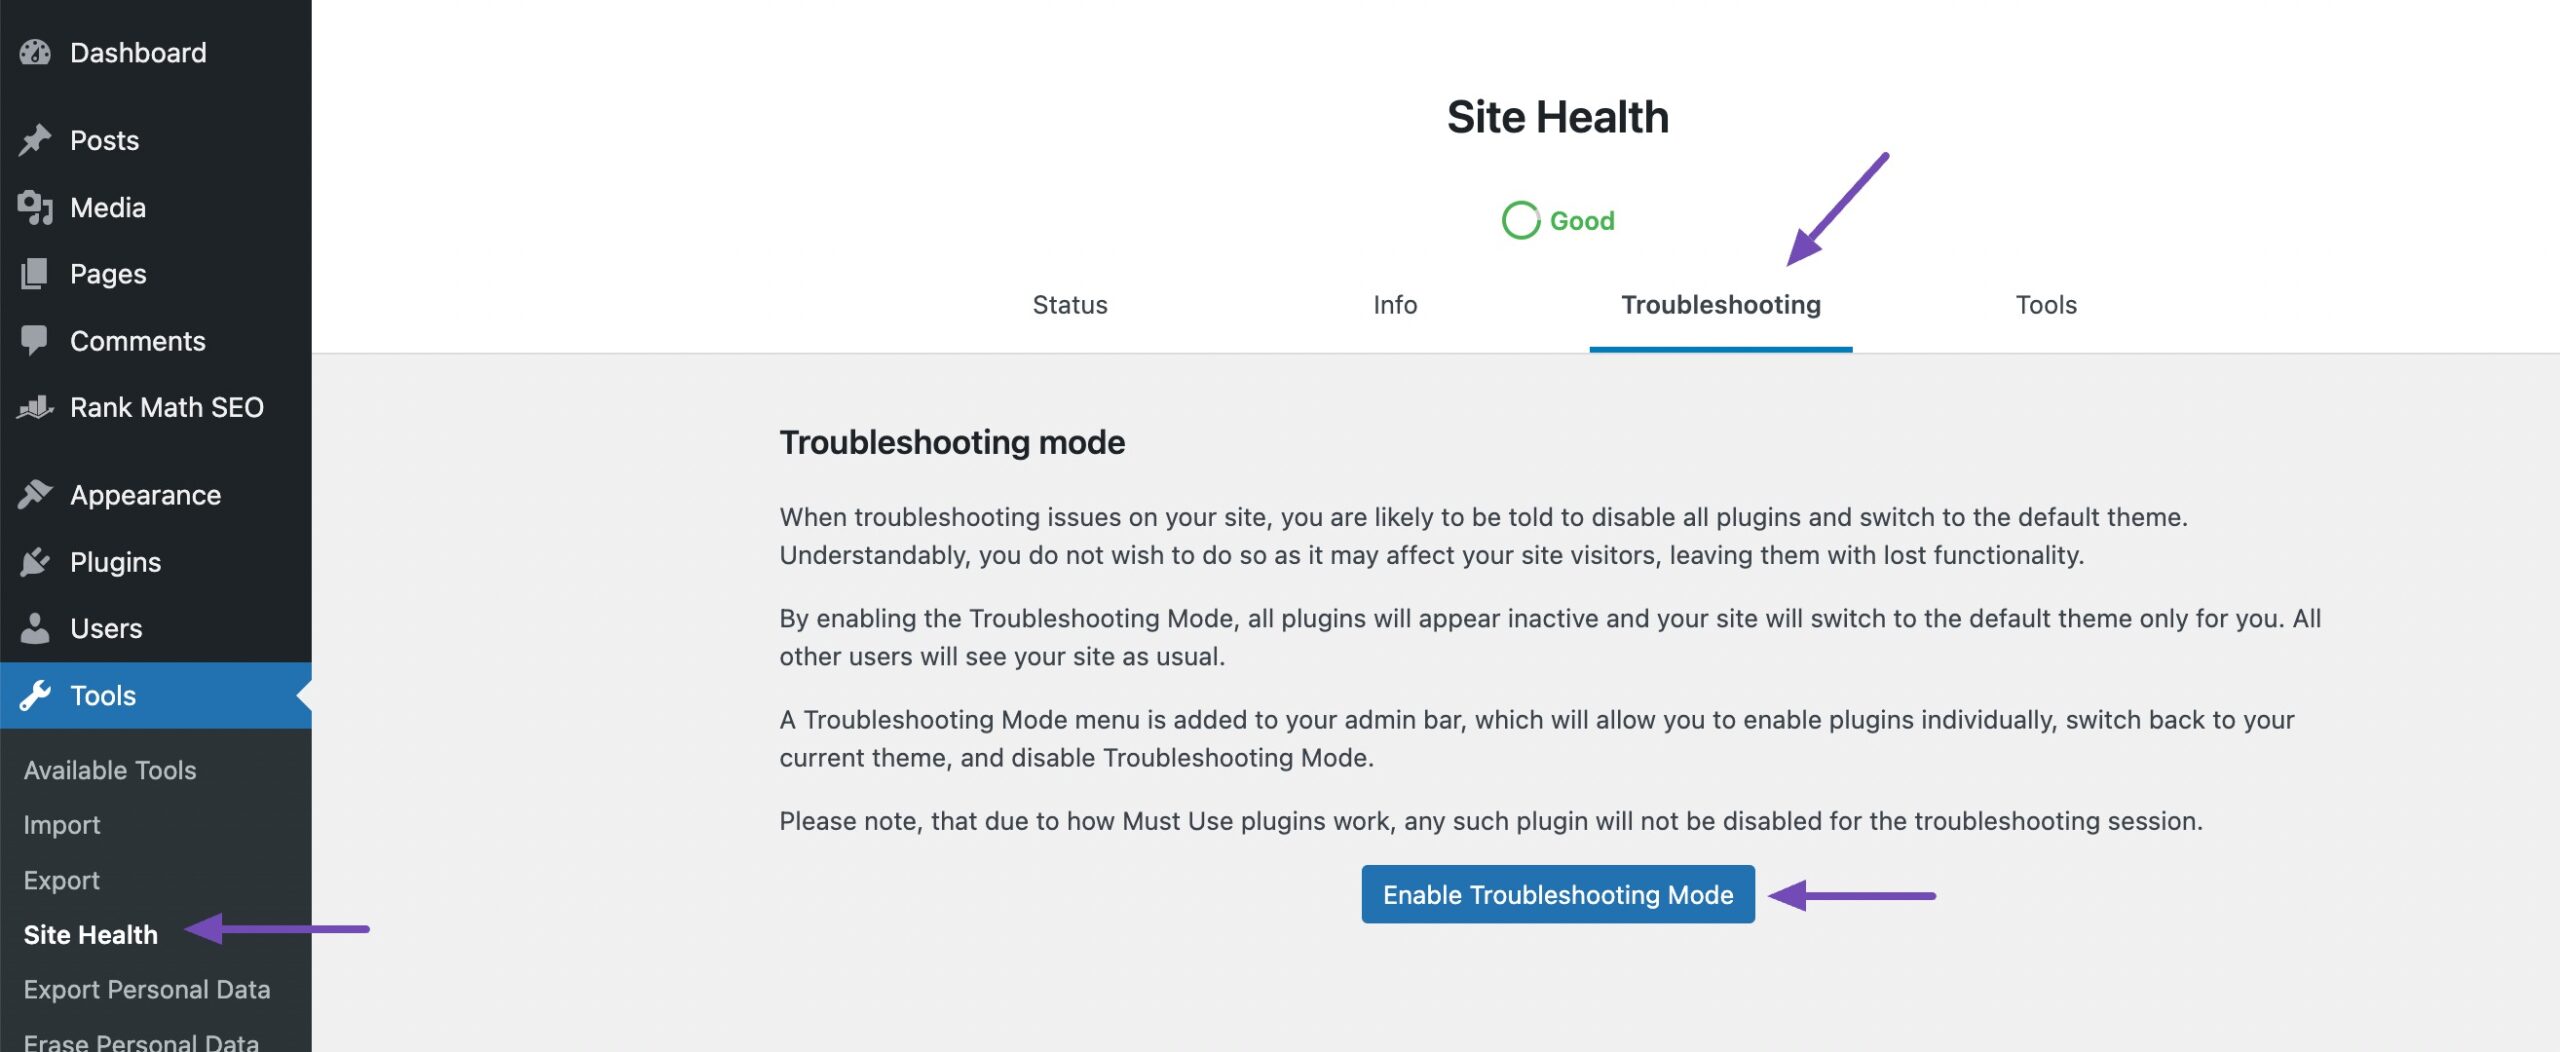 Check Site Health